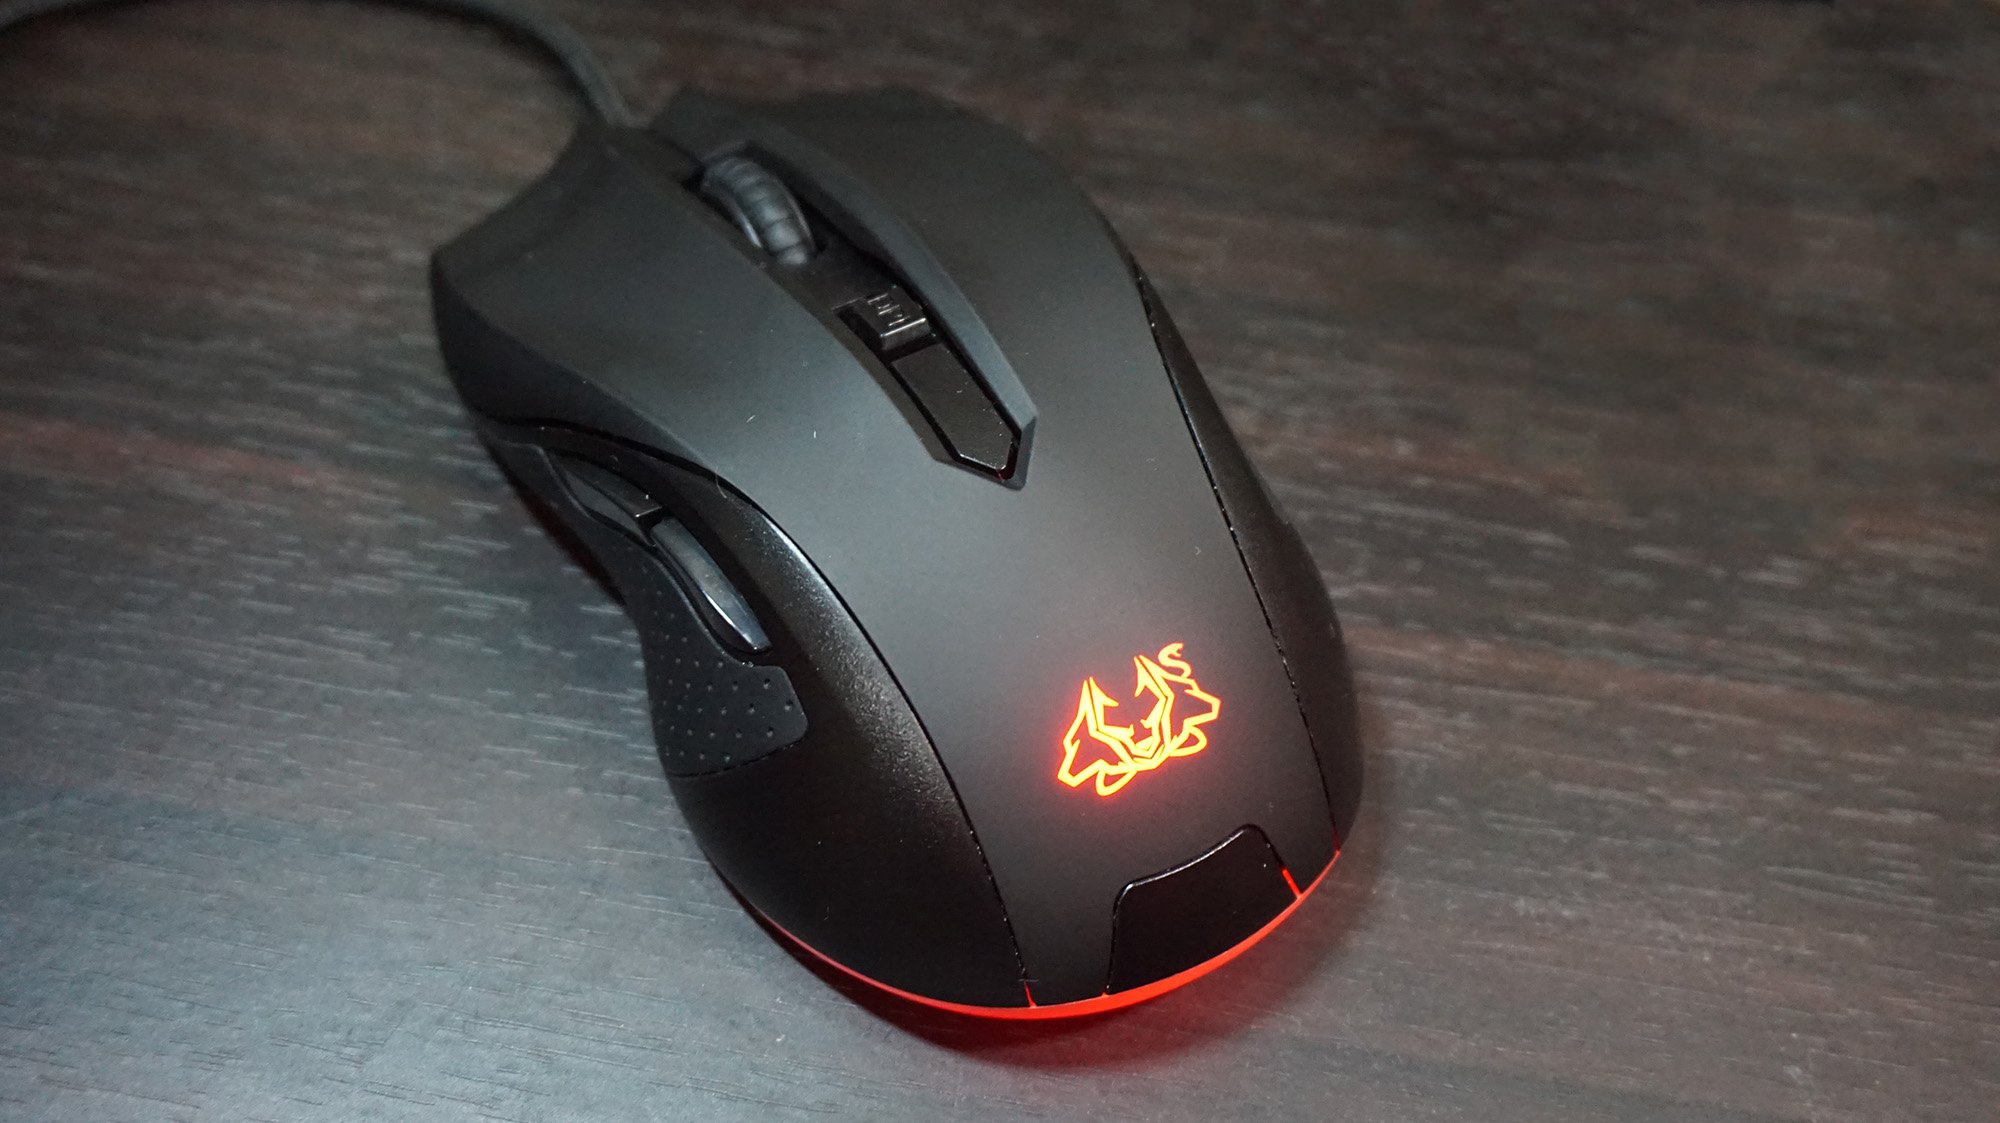 ASUS Cerberus Gaming Mouse%20(1)